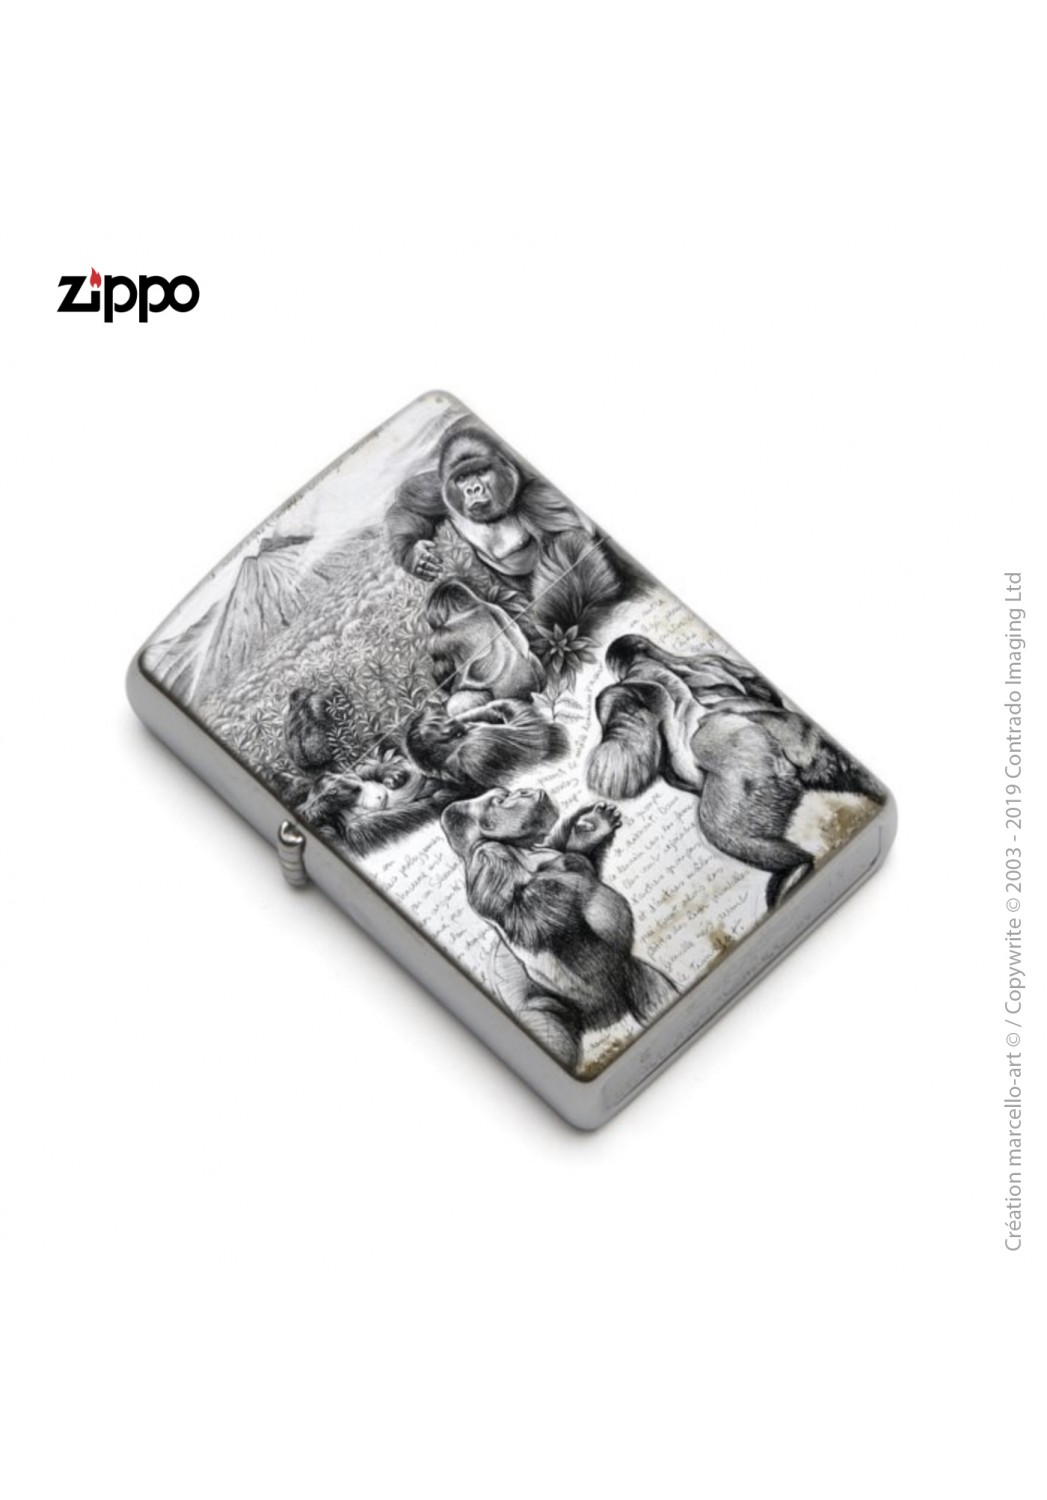 Marcello-art : Accessoires de décoration Zippo 301 gorilles Virunga